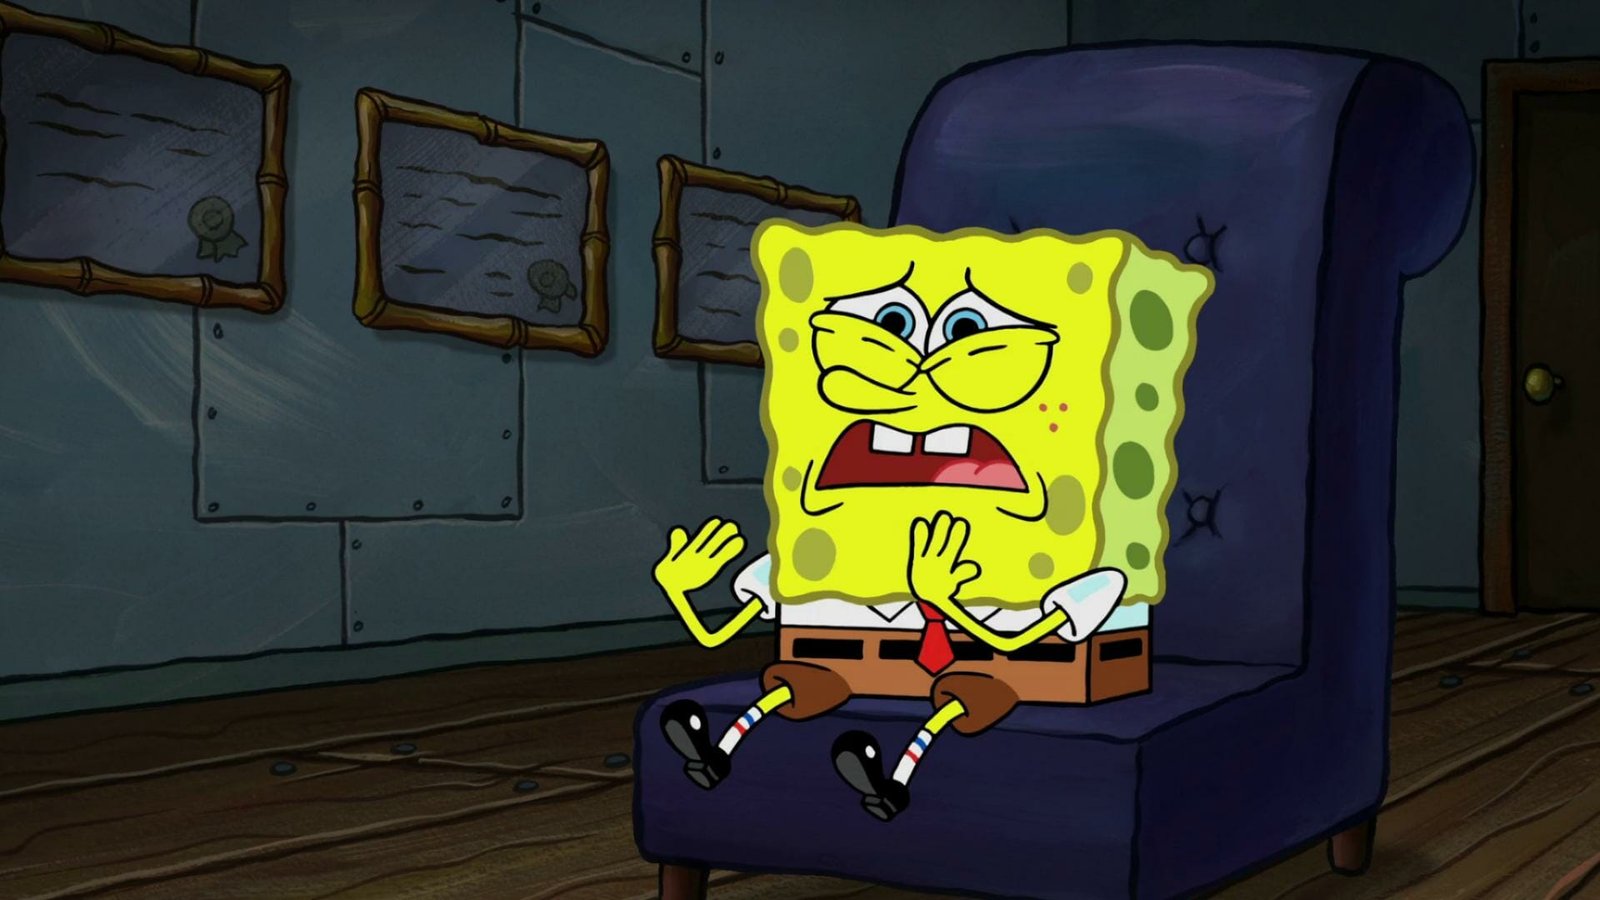 Best Spongebob episodes: SpongeBob’s Bad Habit